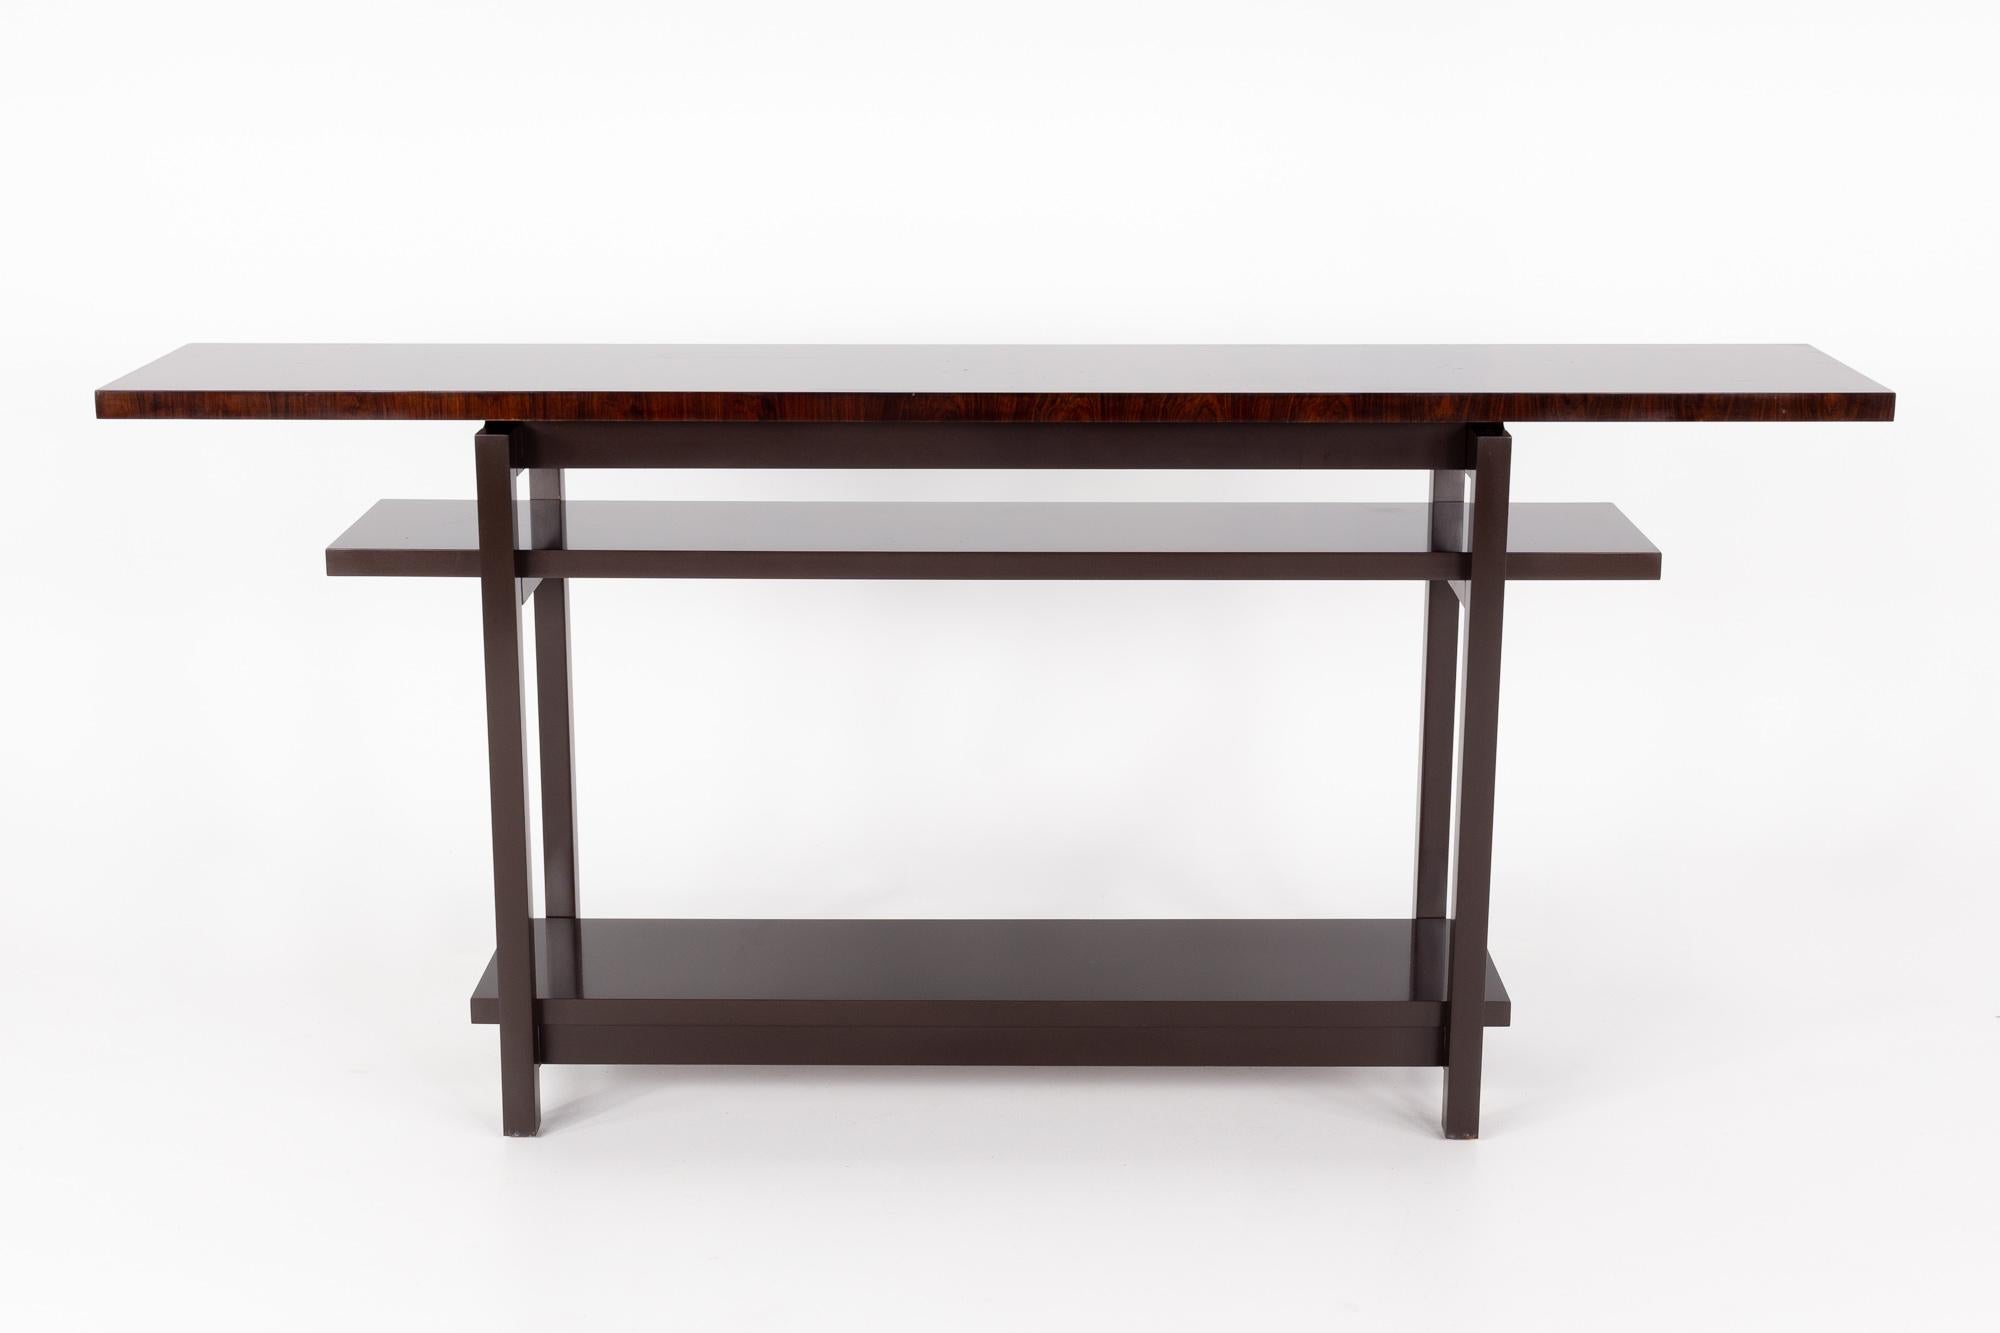 Baker Furniture Zeitgenössischer Konsolentisch

Dieser Tisch misst: 76.5 breit x 14,5 tief x 34,5 hoch

Dieses Stück hat einige leichte Kratzer, aber ist in Great Vintage Condition.

Über Fotos: Wir machen unsere Fotos in einem Studio mit